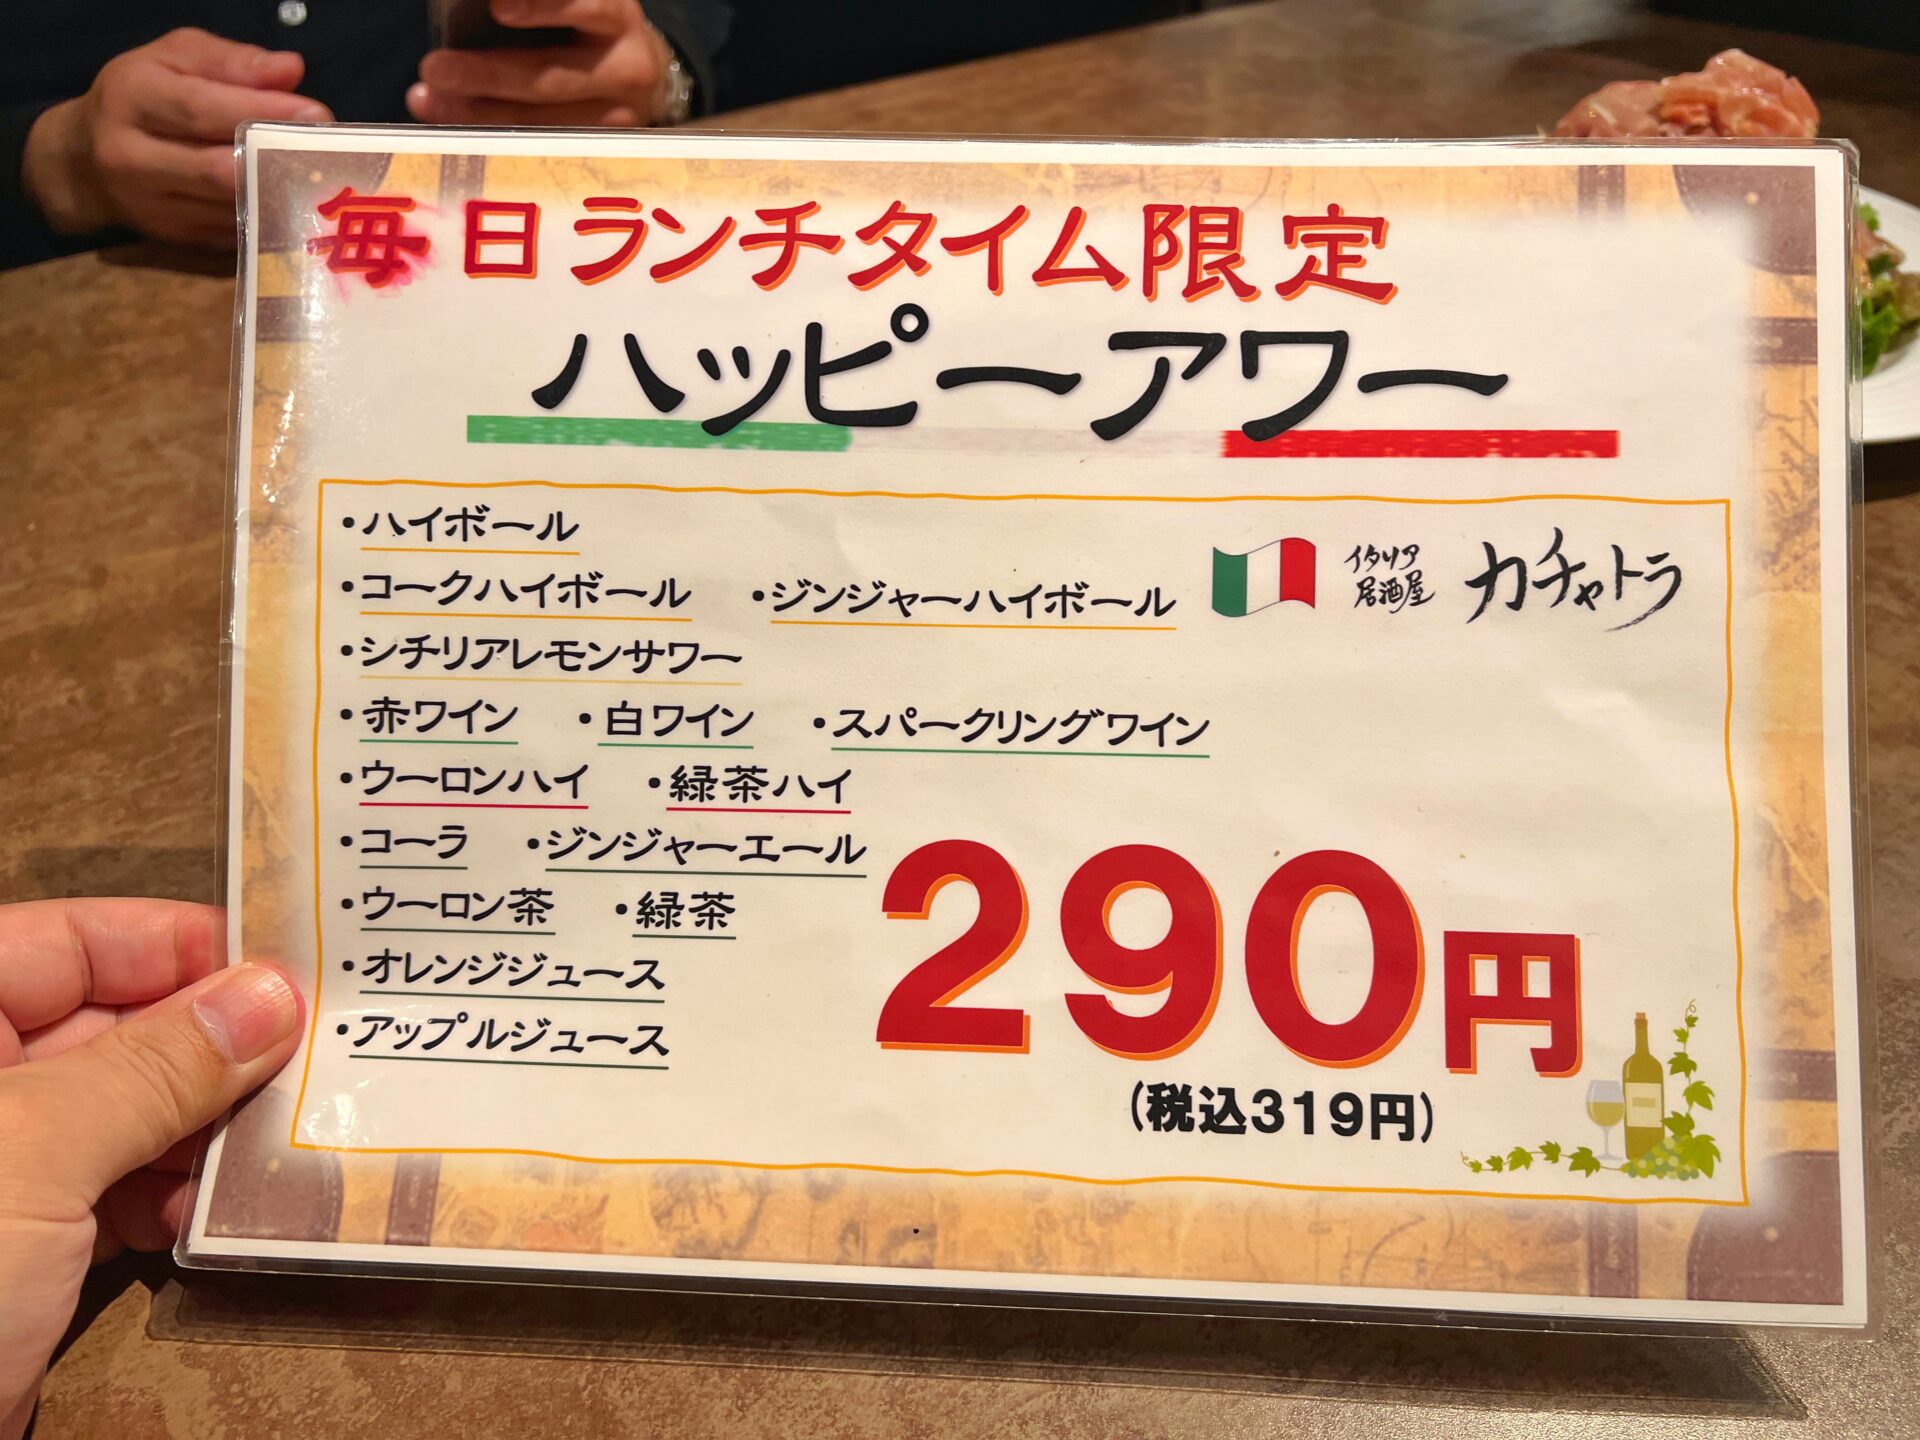 越谷市「イタリア居酒屋カチャトラ」1人1000円で注文できる前菜盛り合わせが豪華すぎるお店